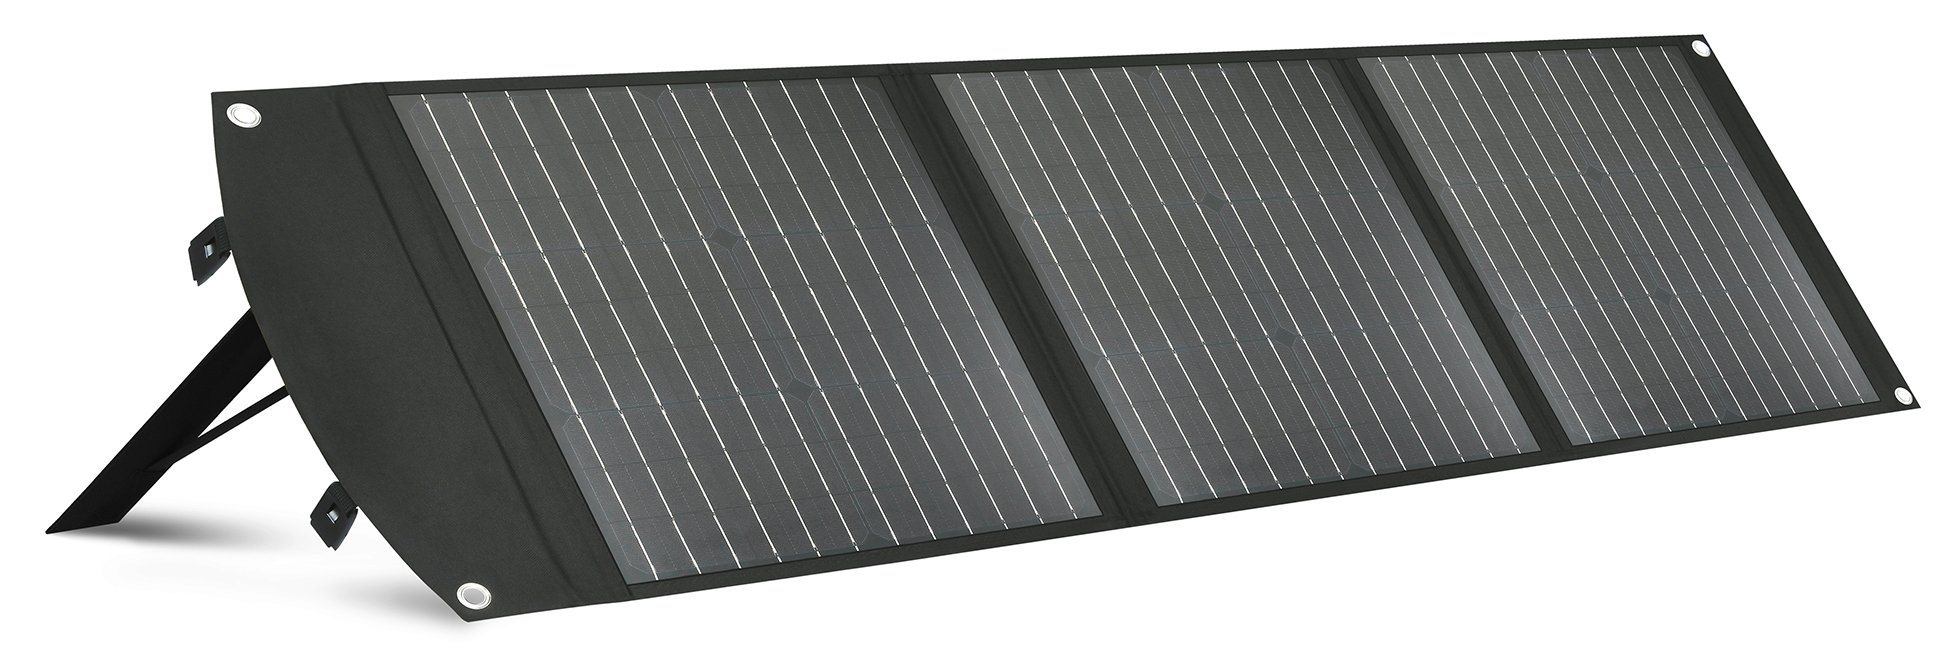 Zusammenklappbares Solarpanel-Ladegerät / monokristallines Solarpanel für Haustiere, 75 W, wasserdichtes Gewebe / intelligenter Ladechip